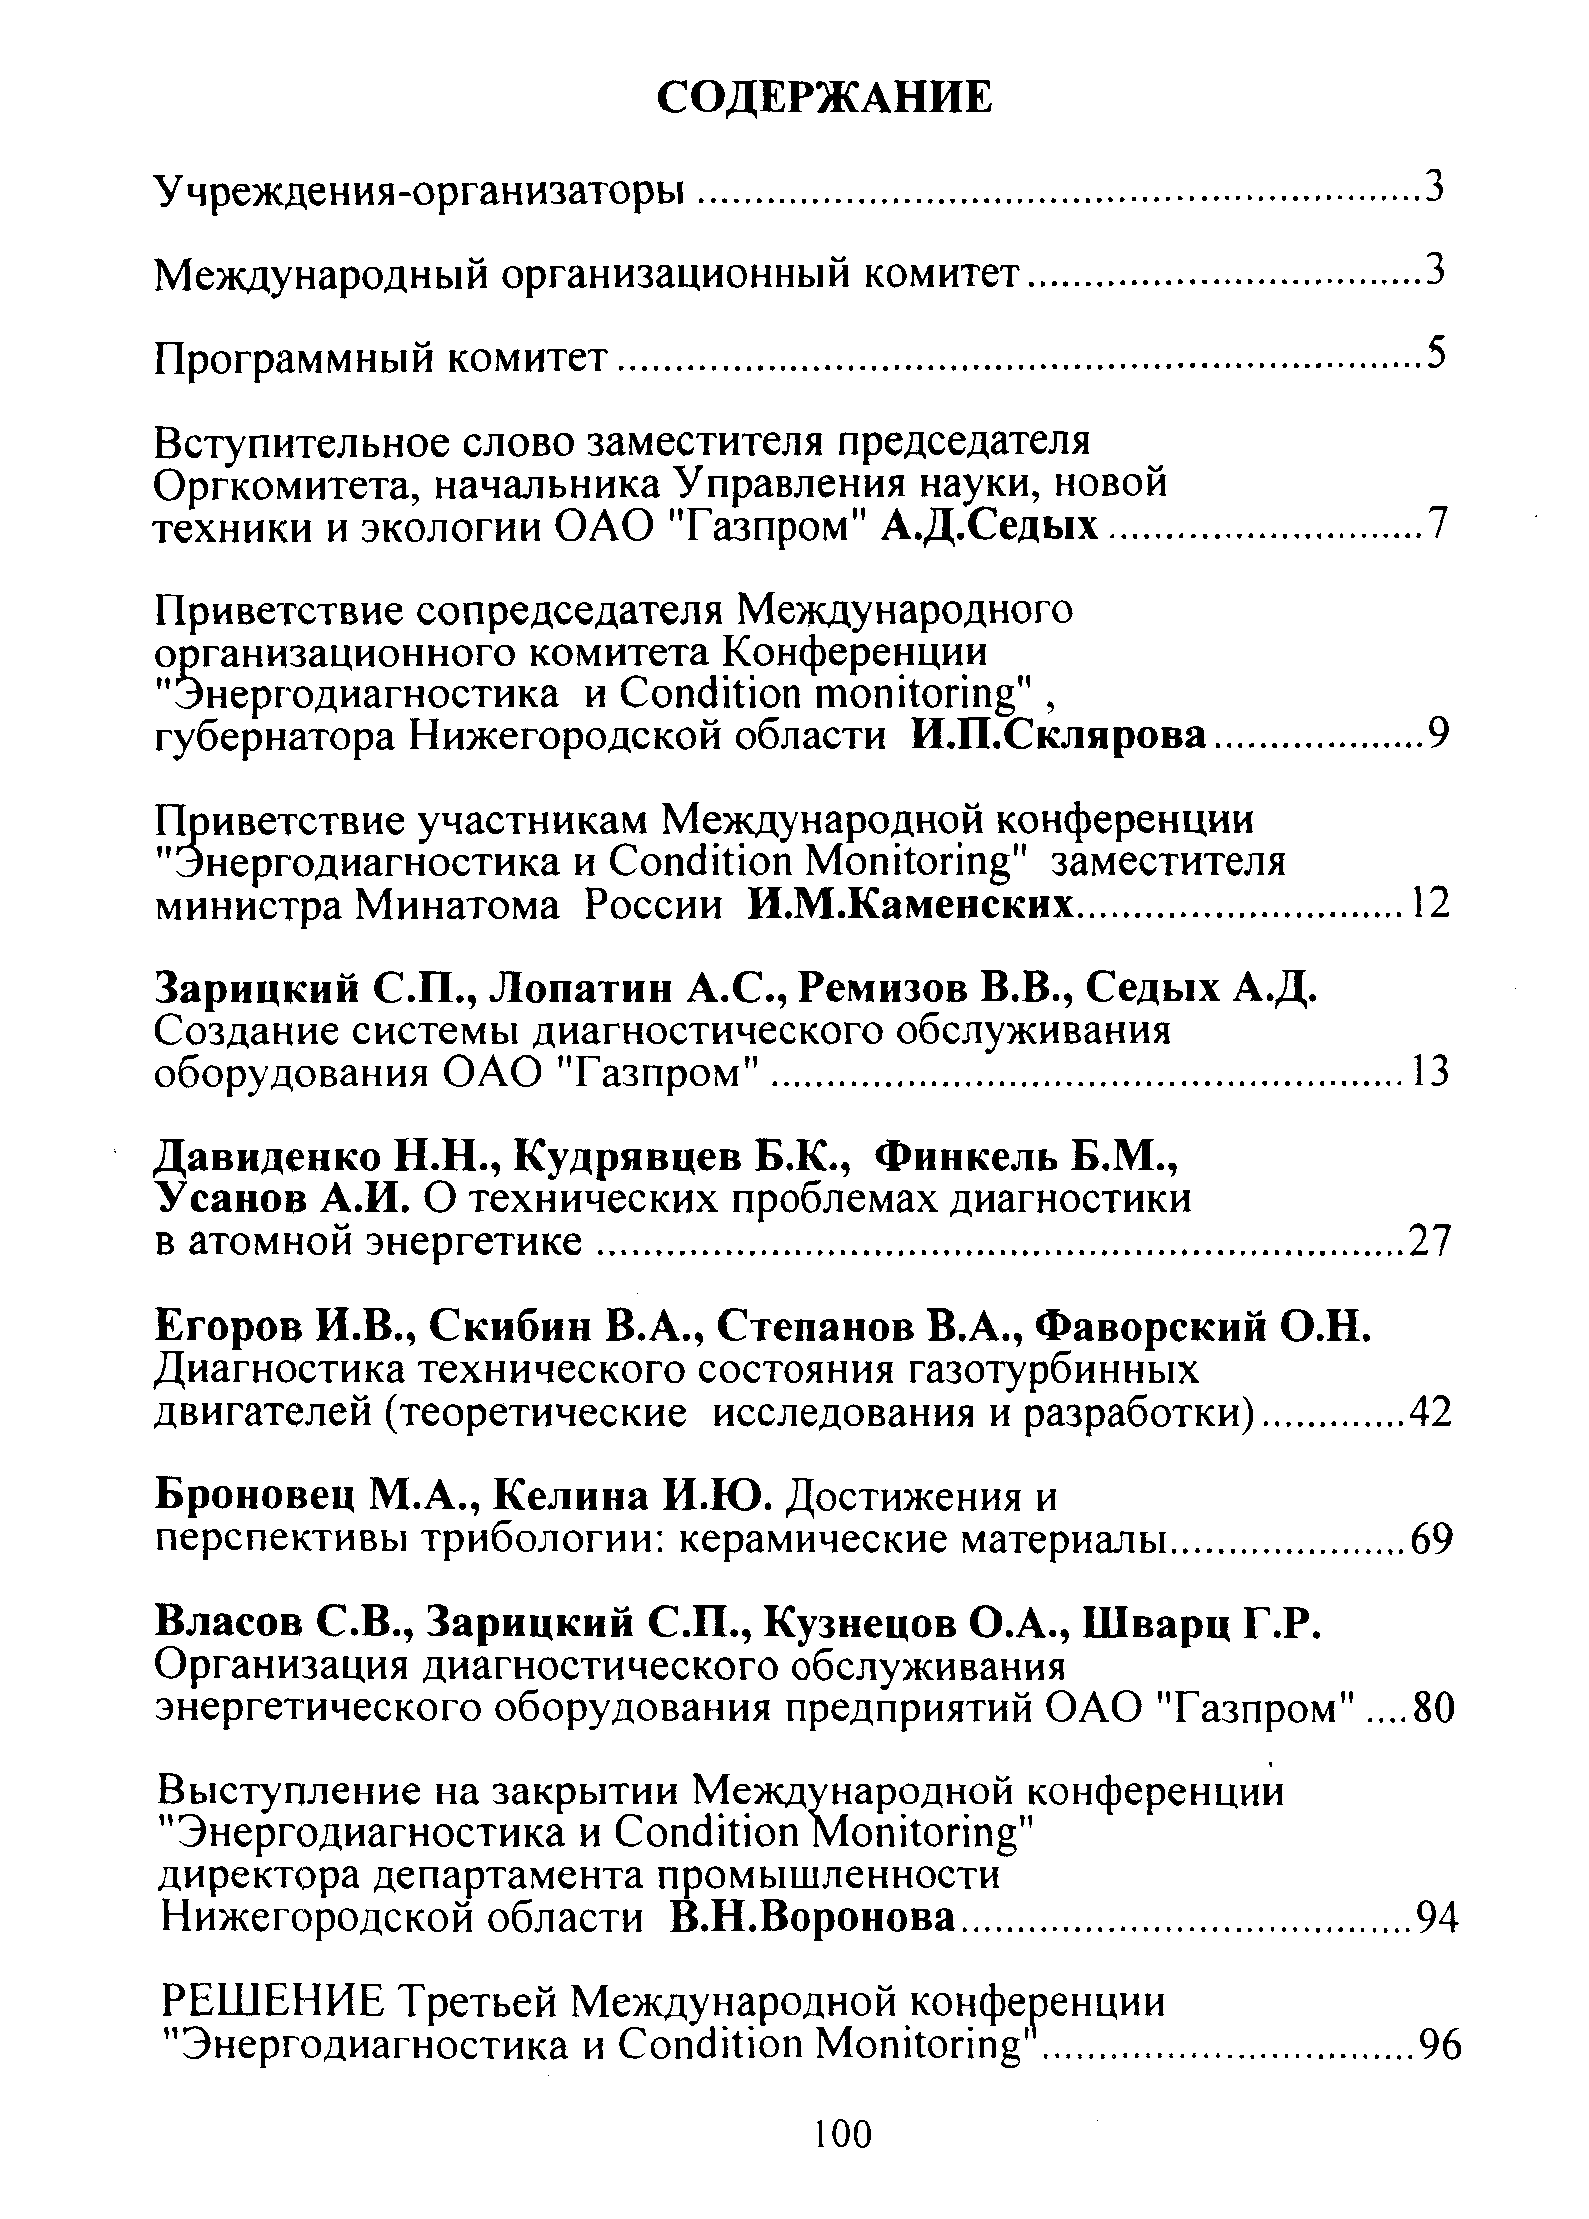 Зарицкий С.П., Лопатин А.С., Ремизов В.В., Седых А.Д.
